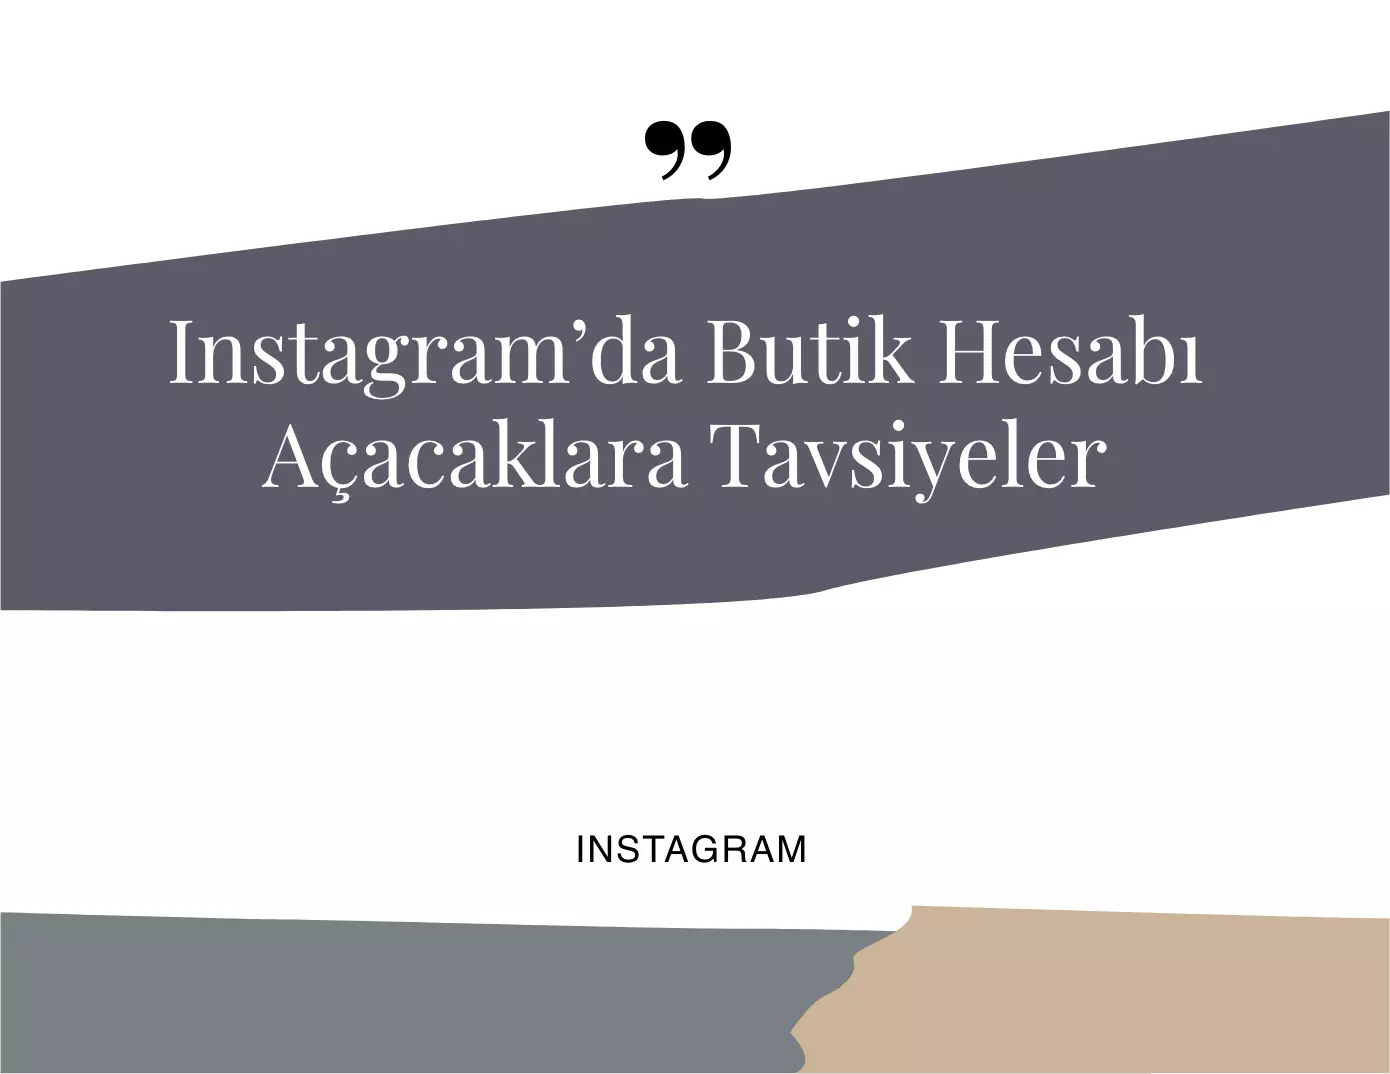 Instagram’da Butik Hesabı Açacaklara Tavsiyeler